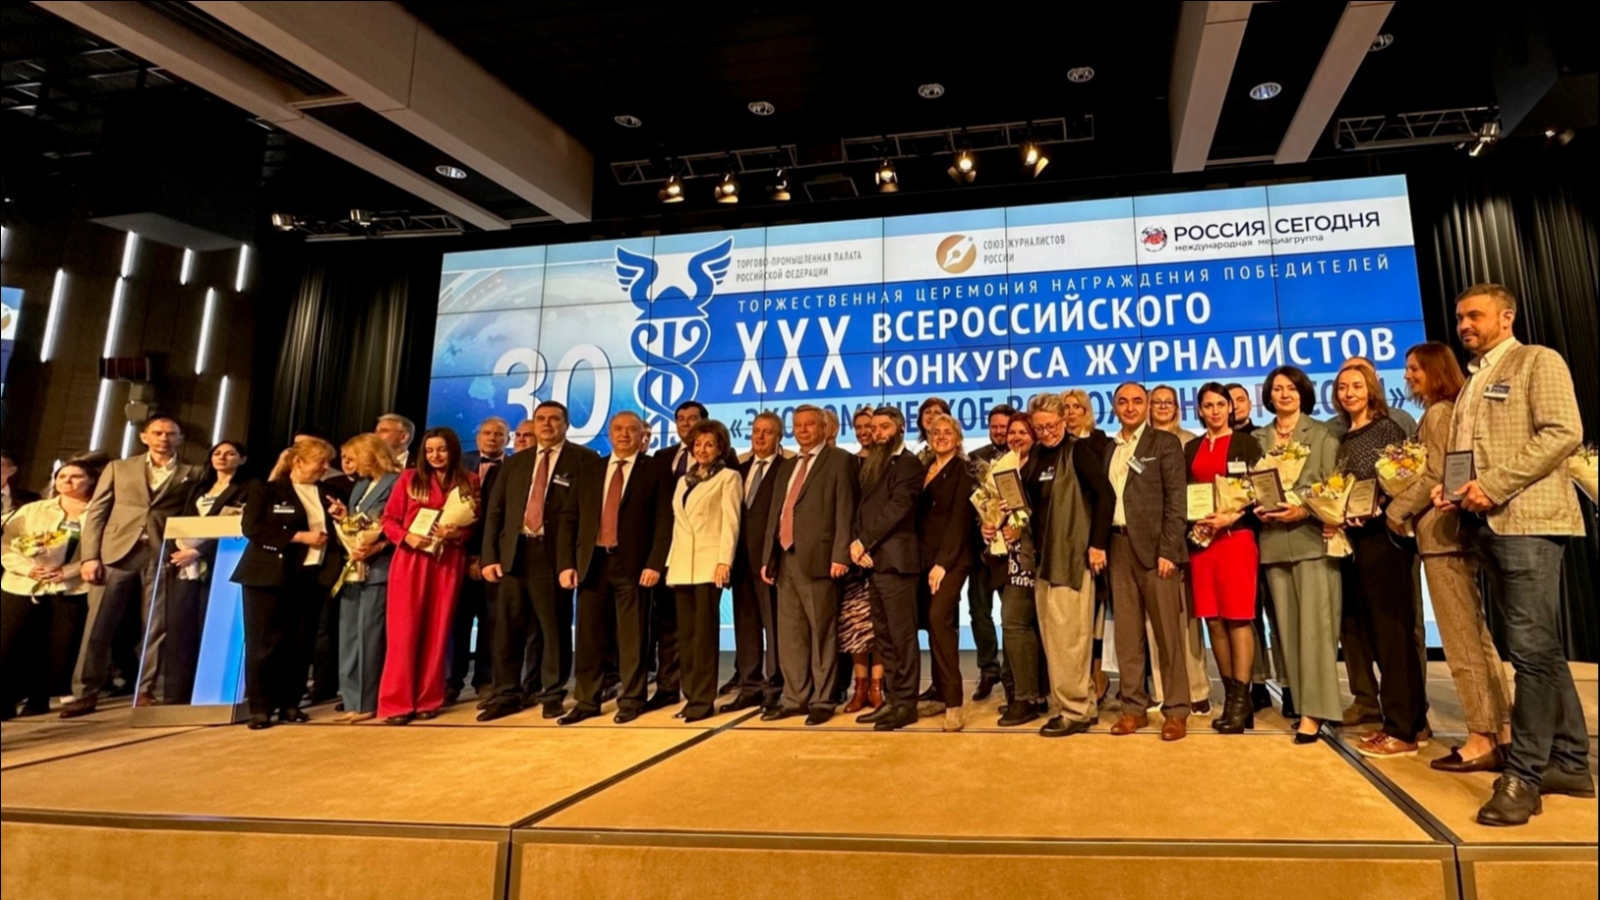 Пресс-служба Ковдорского ГОКа признана лучшей на конкурсе журналистов